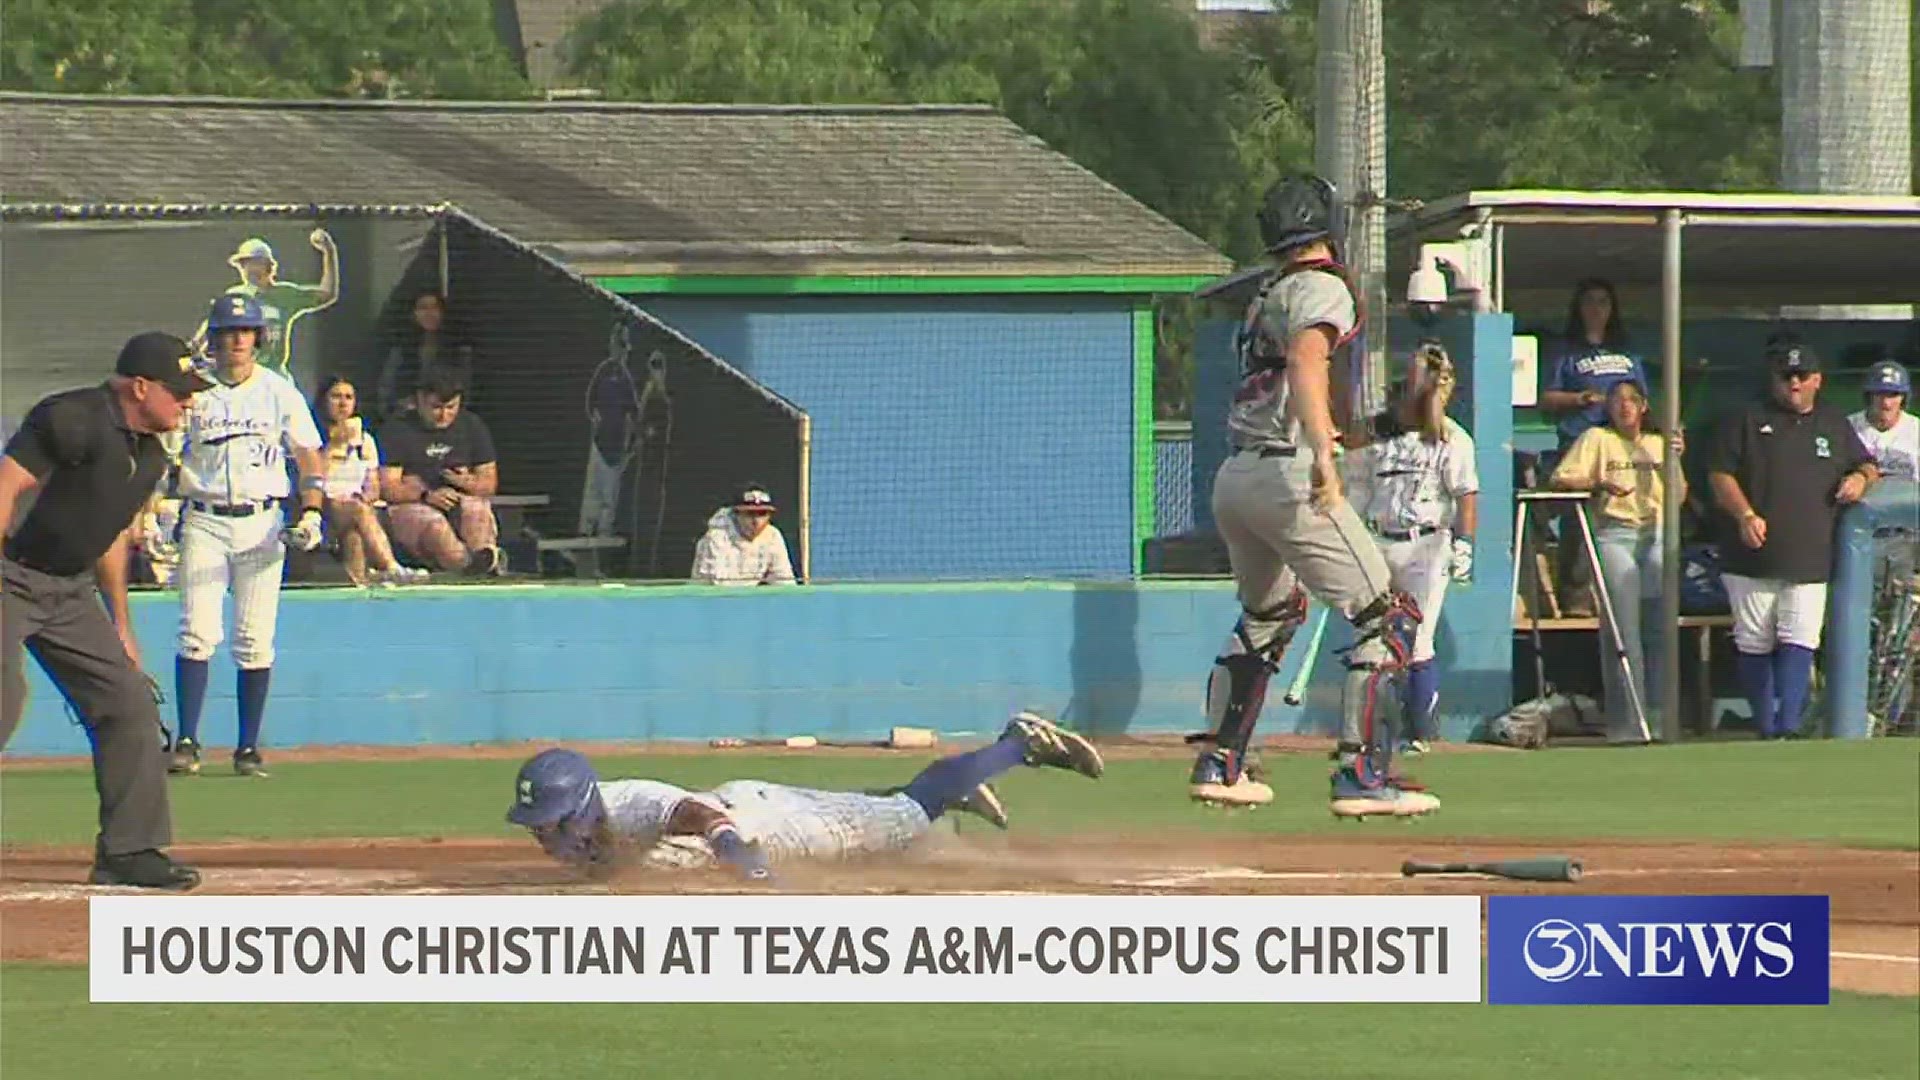 Texas A&M-Corpus Christi fell to Houston Christian, 6-2.